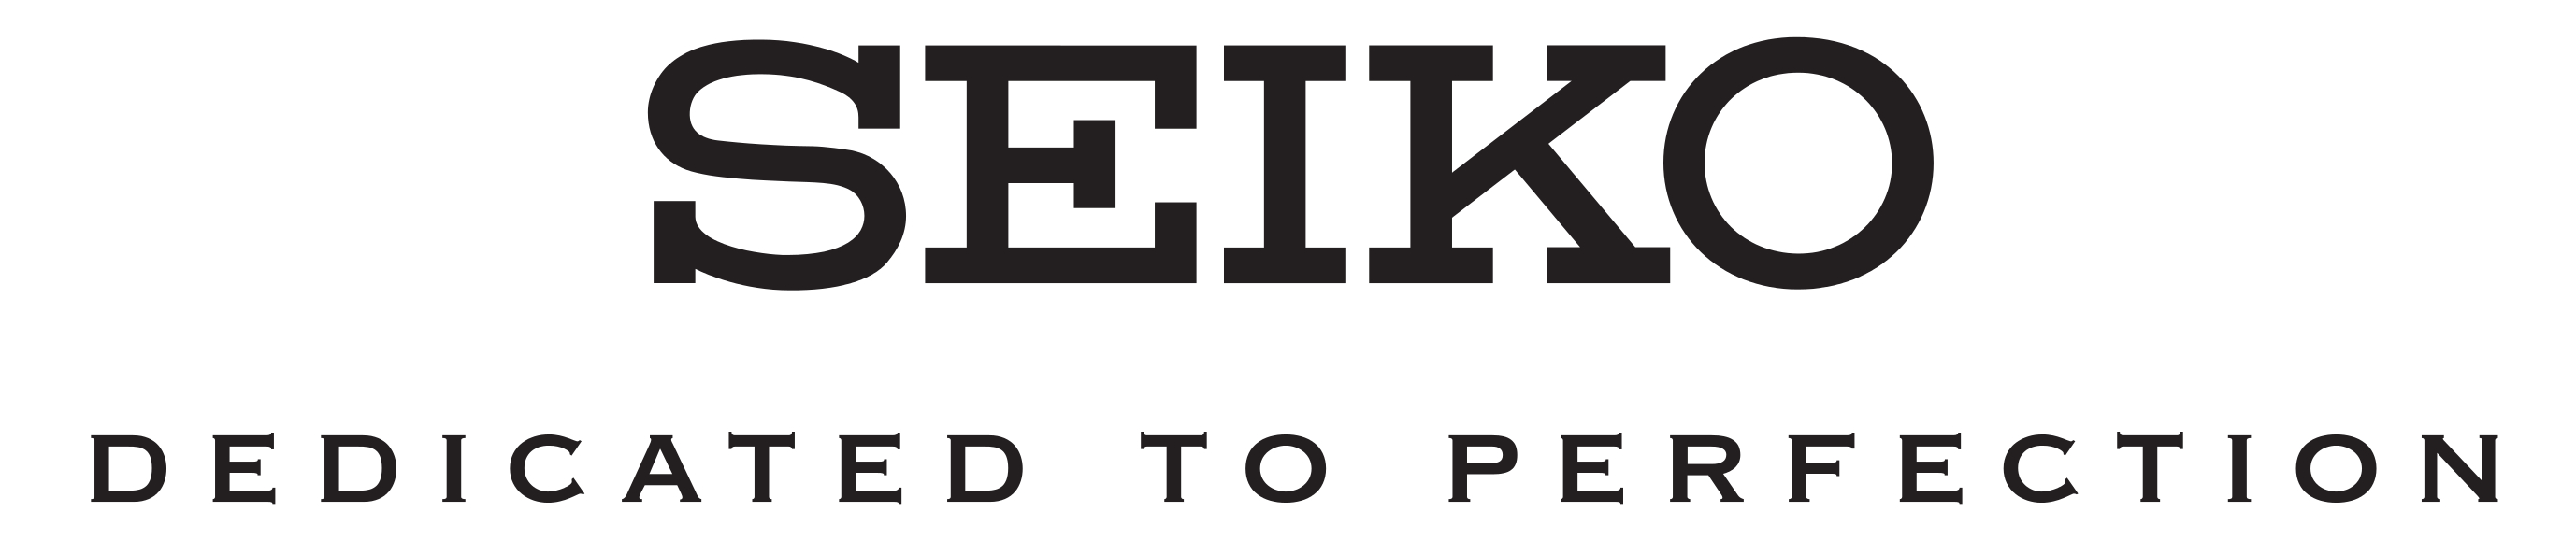 seiko logo 03